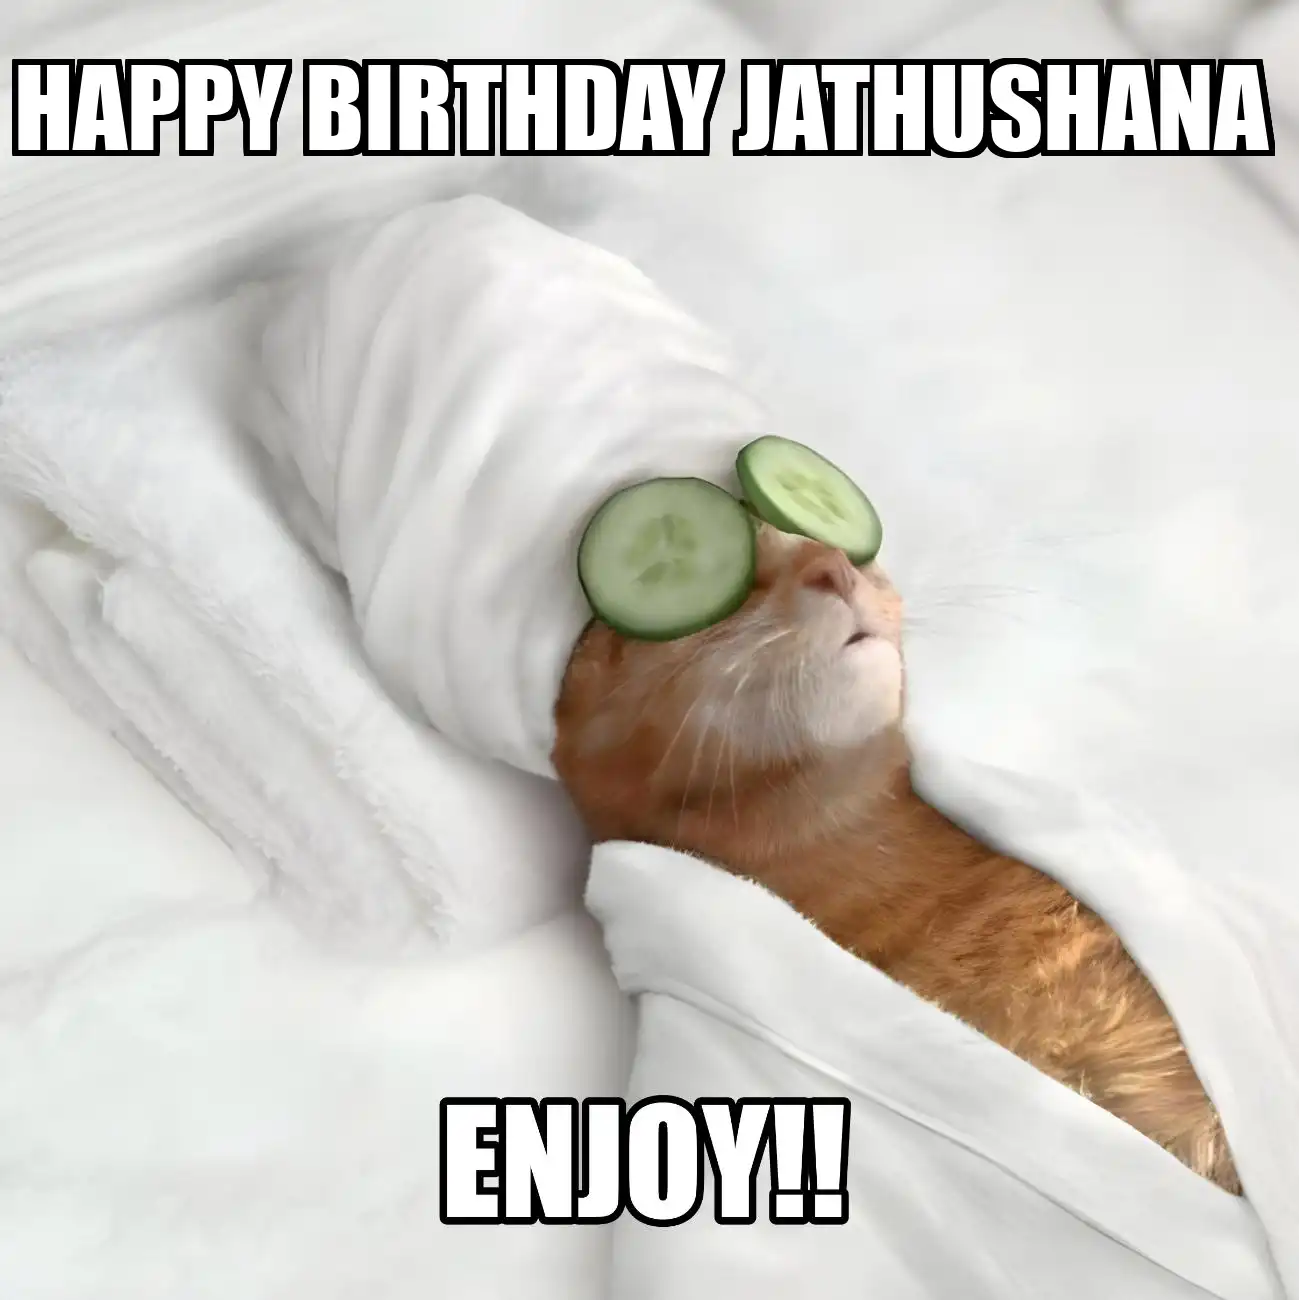 Happy Birthday Jathushana Enjoy Cat Meme